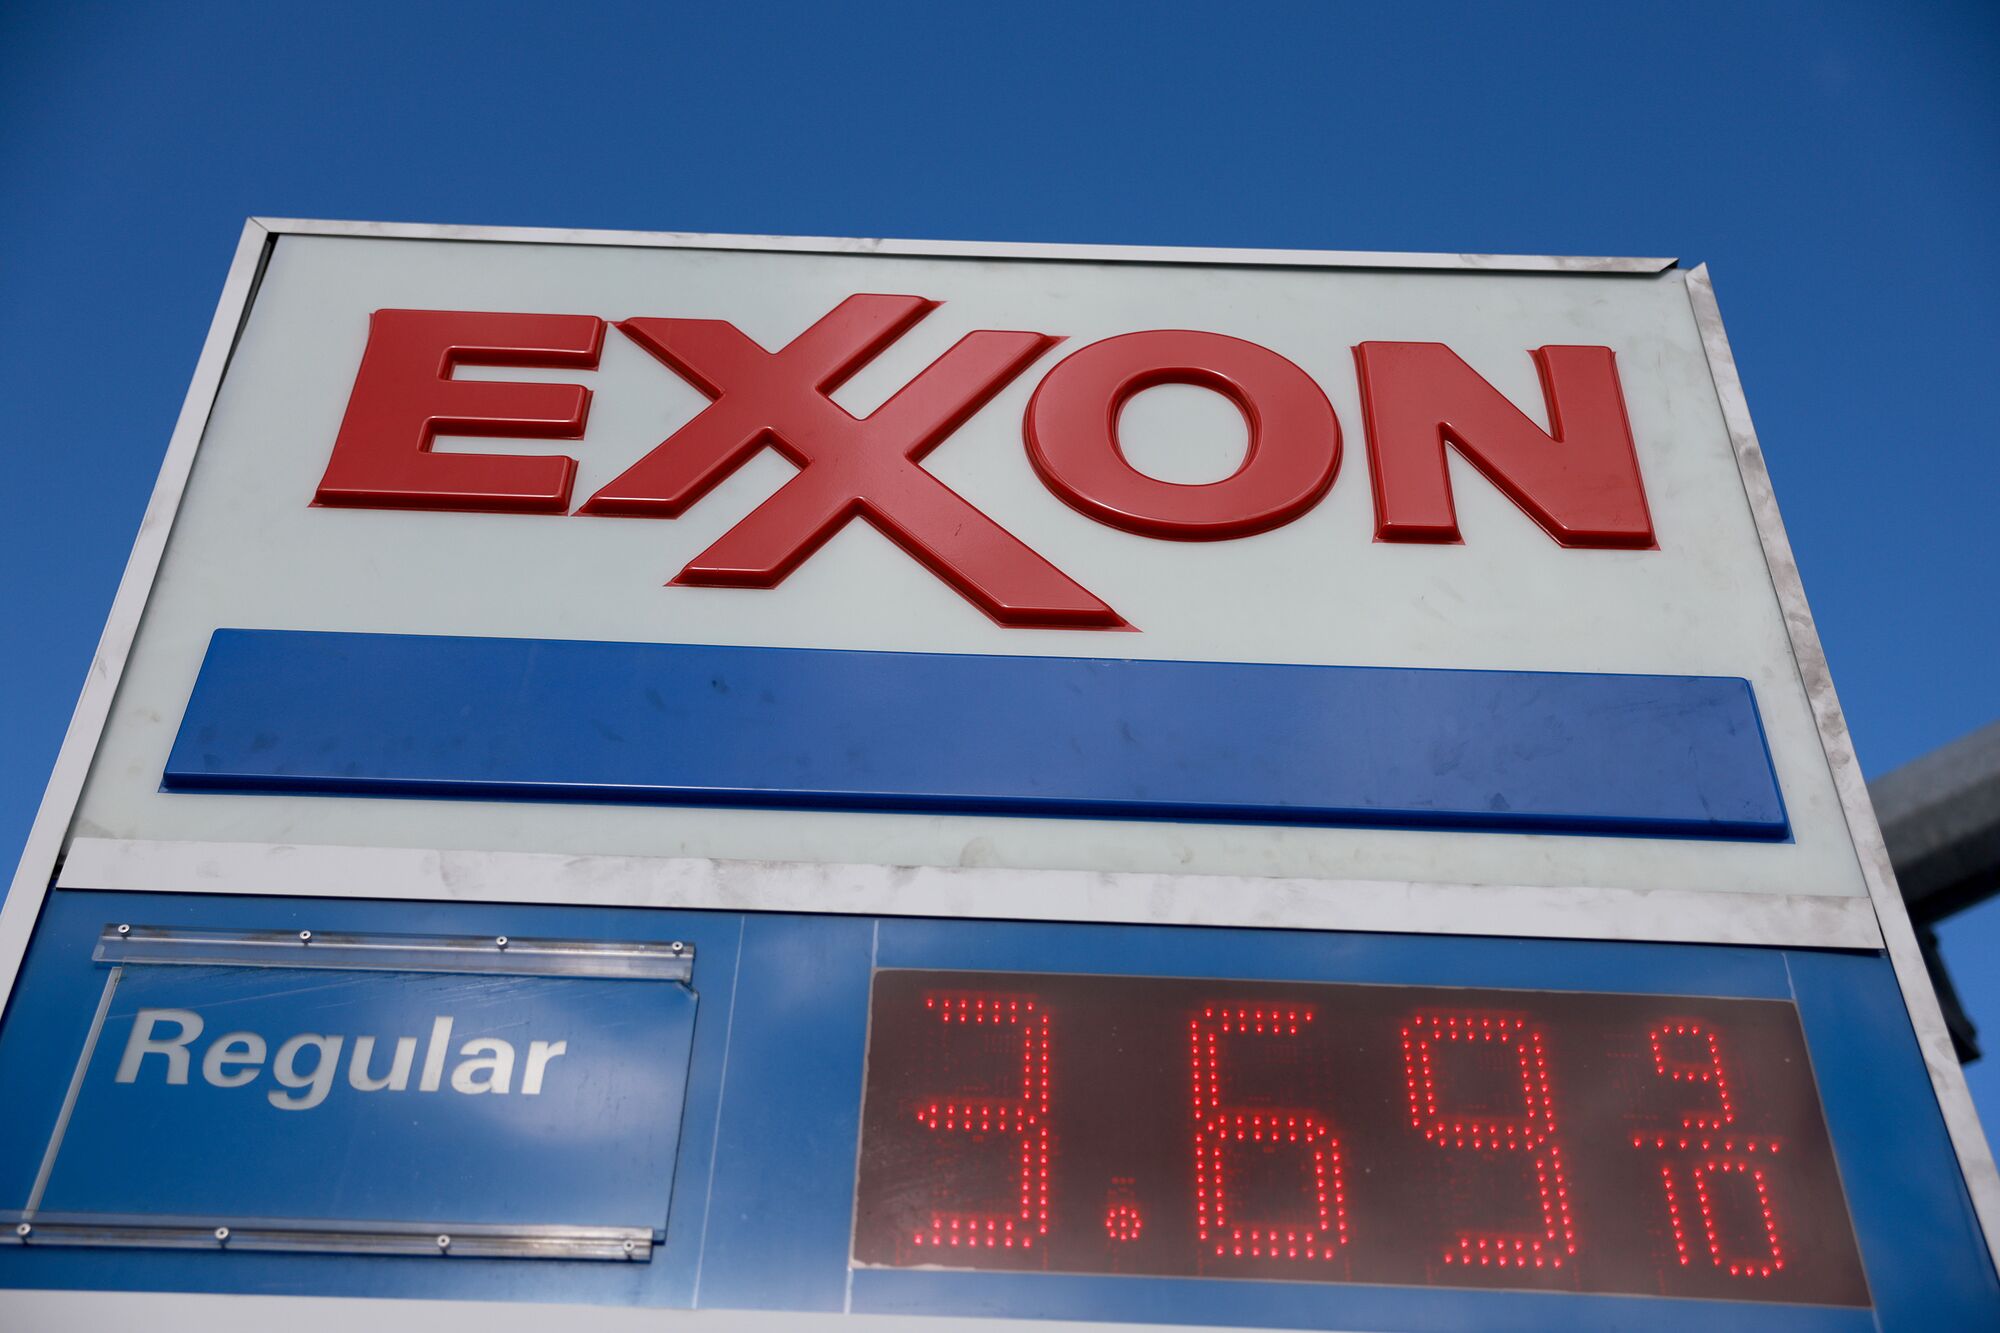 Oil giant Exxon files lawsuit against climate activist investors’ proposal